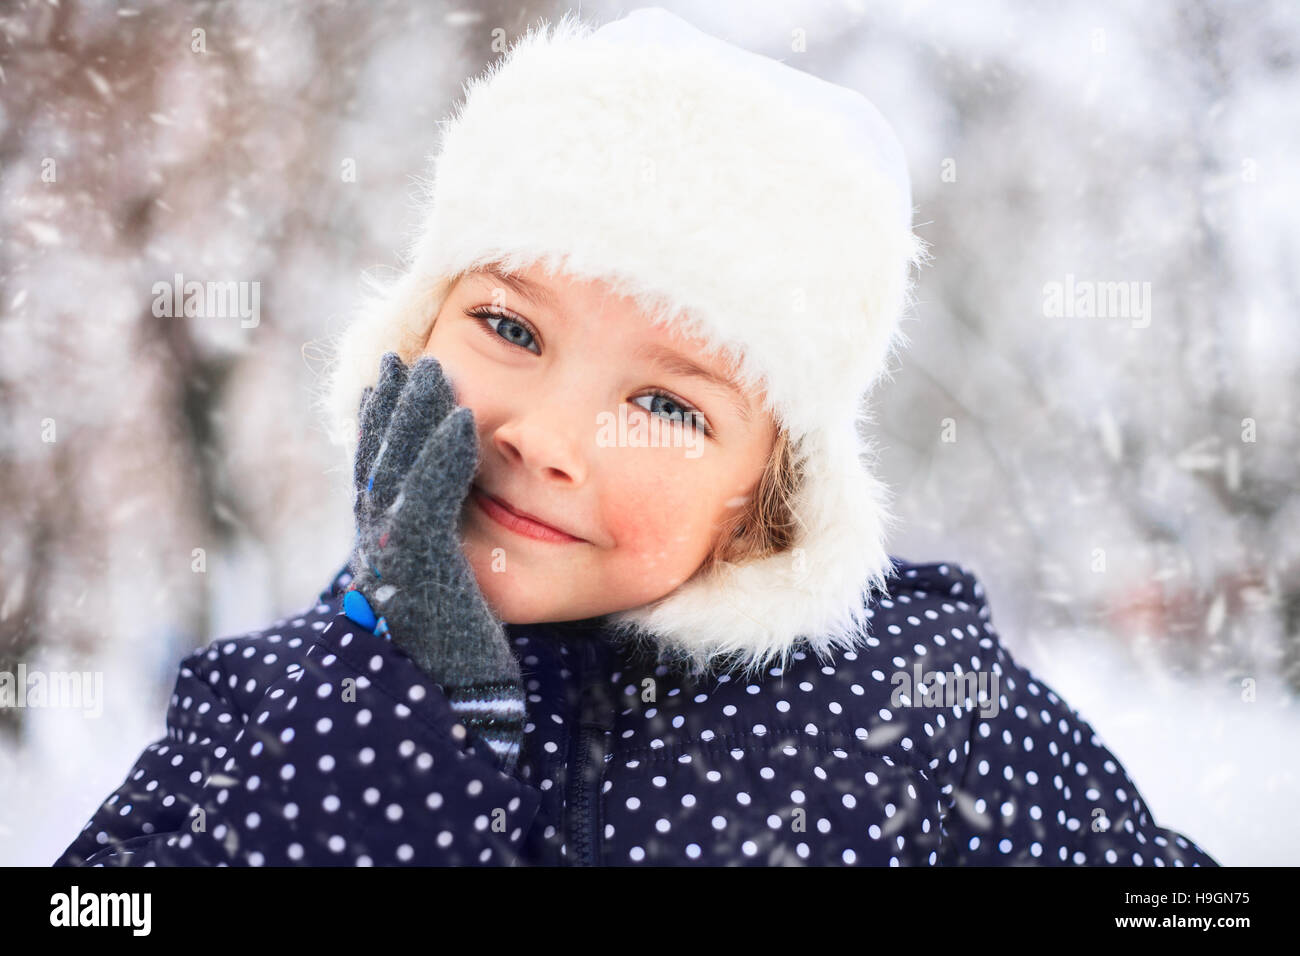 Porträt eines süßen kleinen Mädchens in einem verschneiten Park während eines Schneefalls. Stockfoto